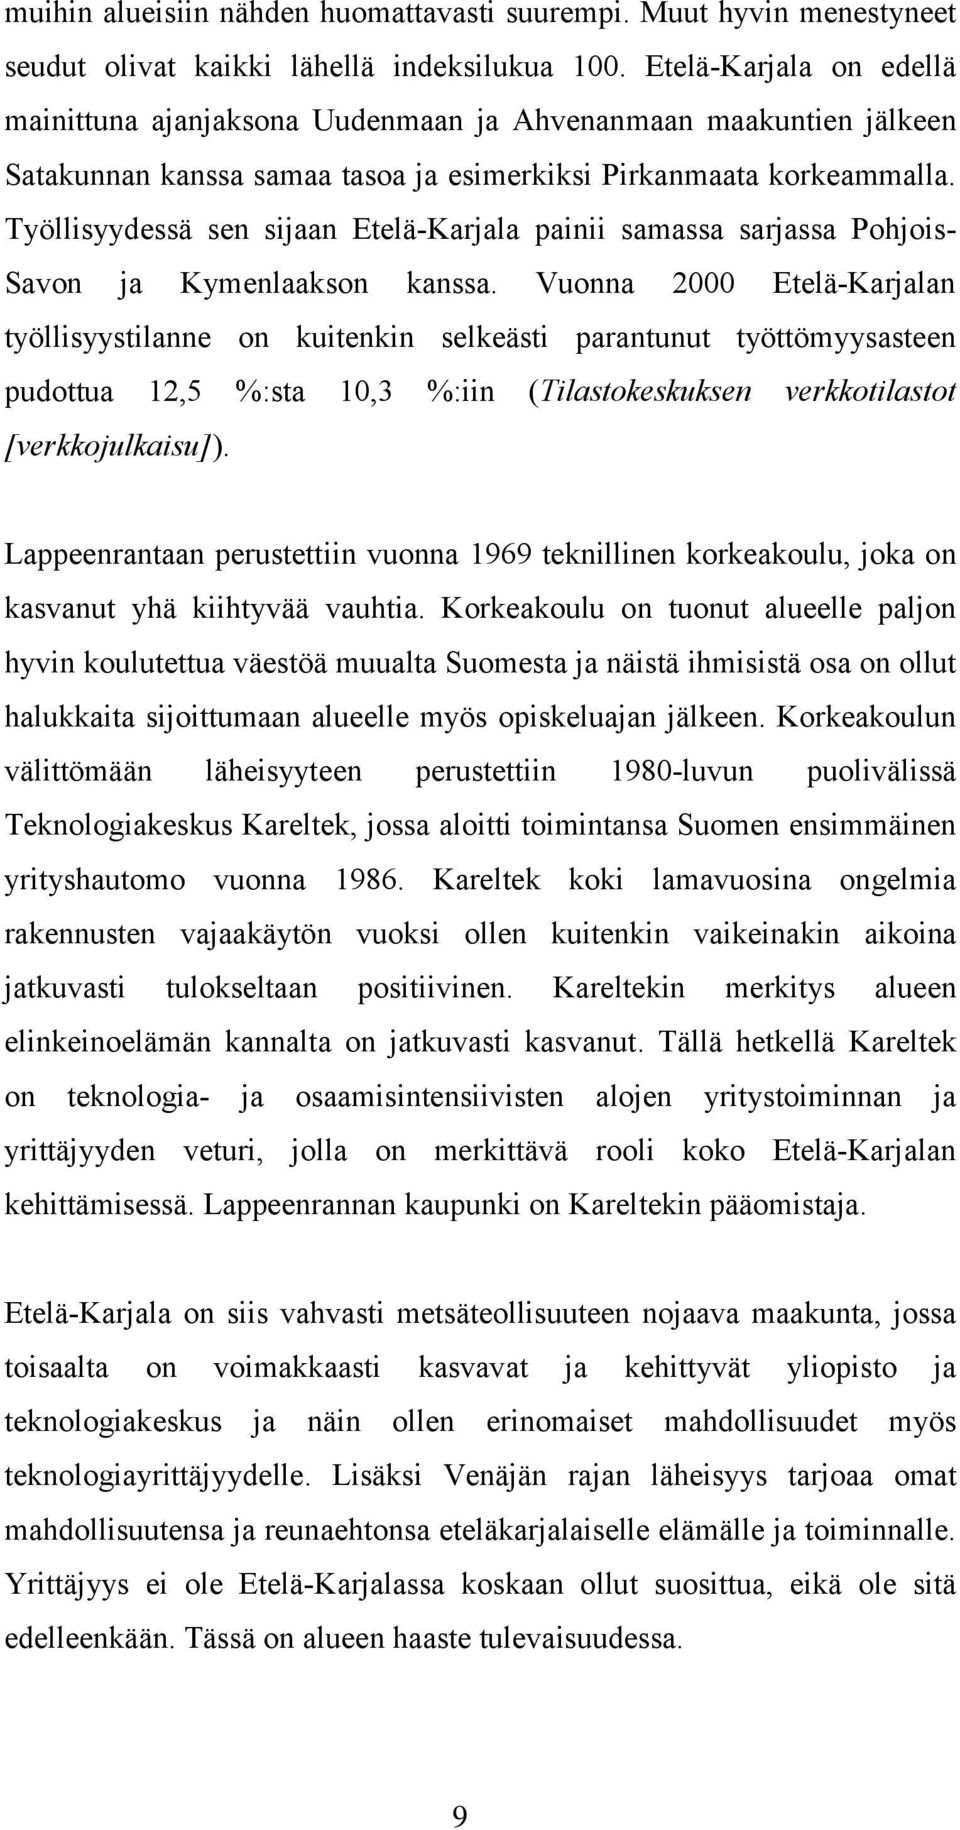 Työllisyydessä sen sijaan Etelä-Karjala painii samassa sarjassa Pohjois- Savon ja Kymenlaakson kanssa.